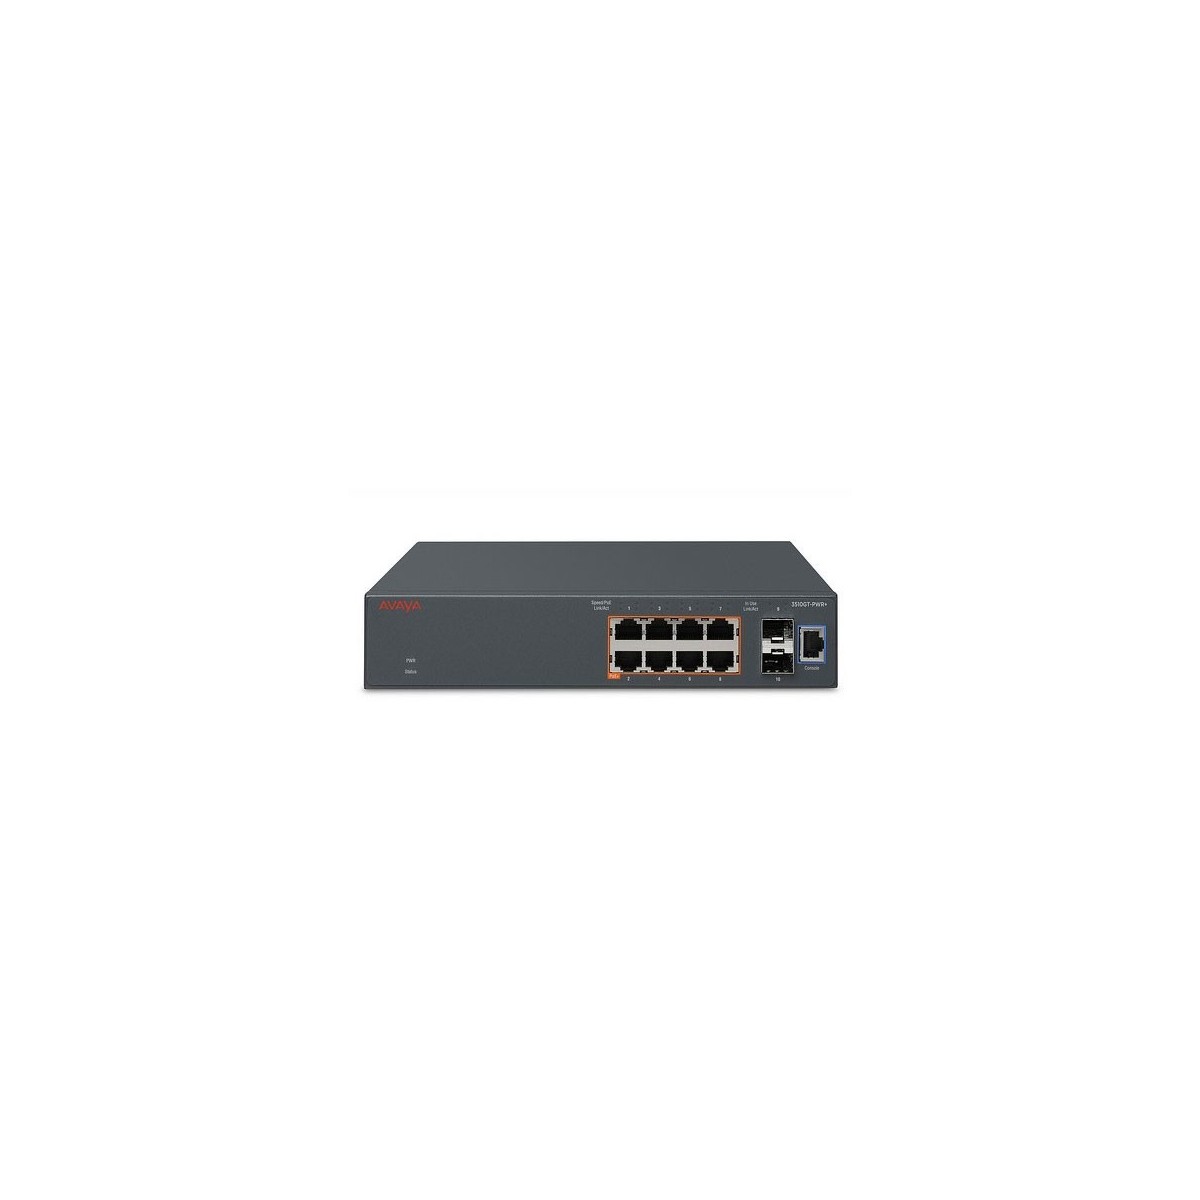 Avaya 3510GT-PWR - Managed - L3 - Gigabit Ethernet (10/100/1000) - Power over Ethernet (PoE) - Rack mounting - 1U